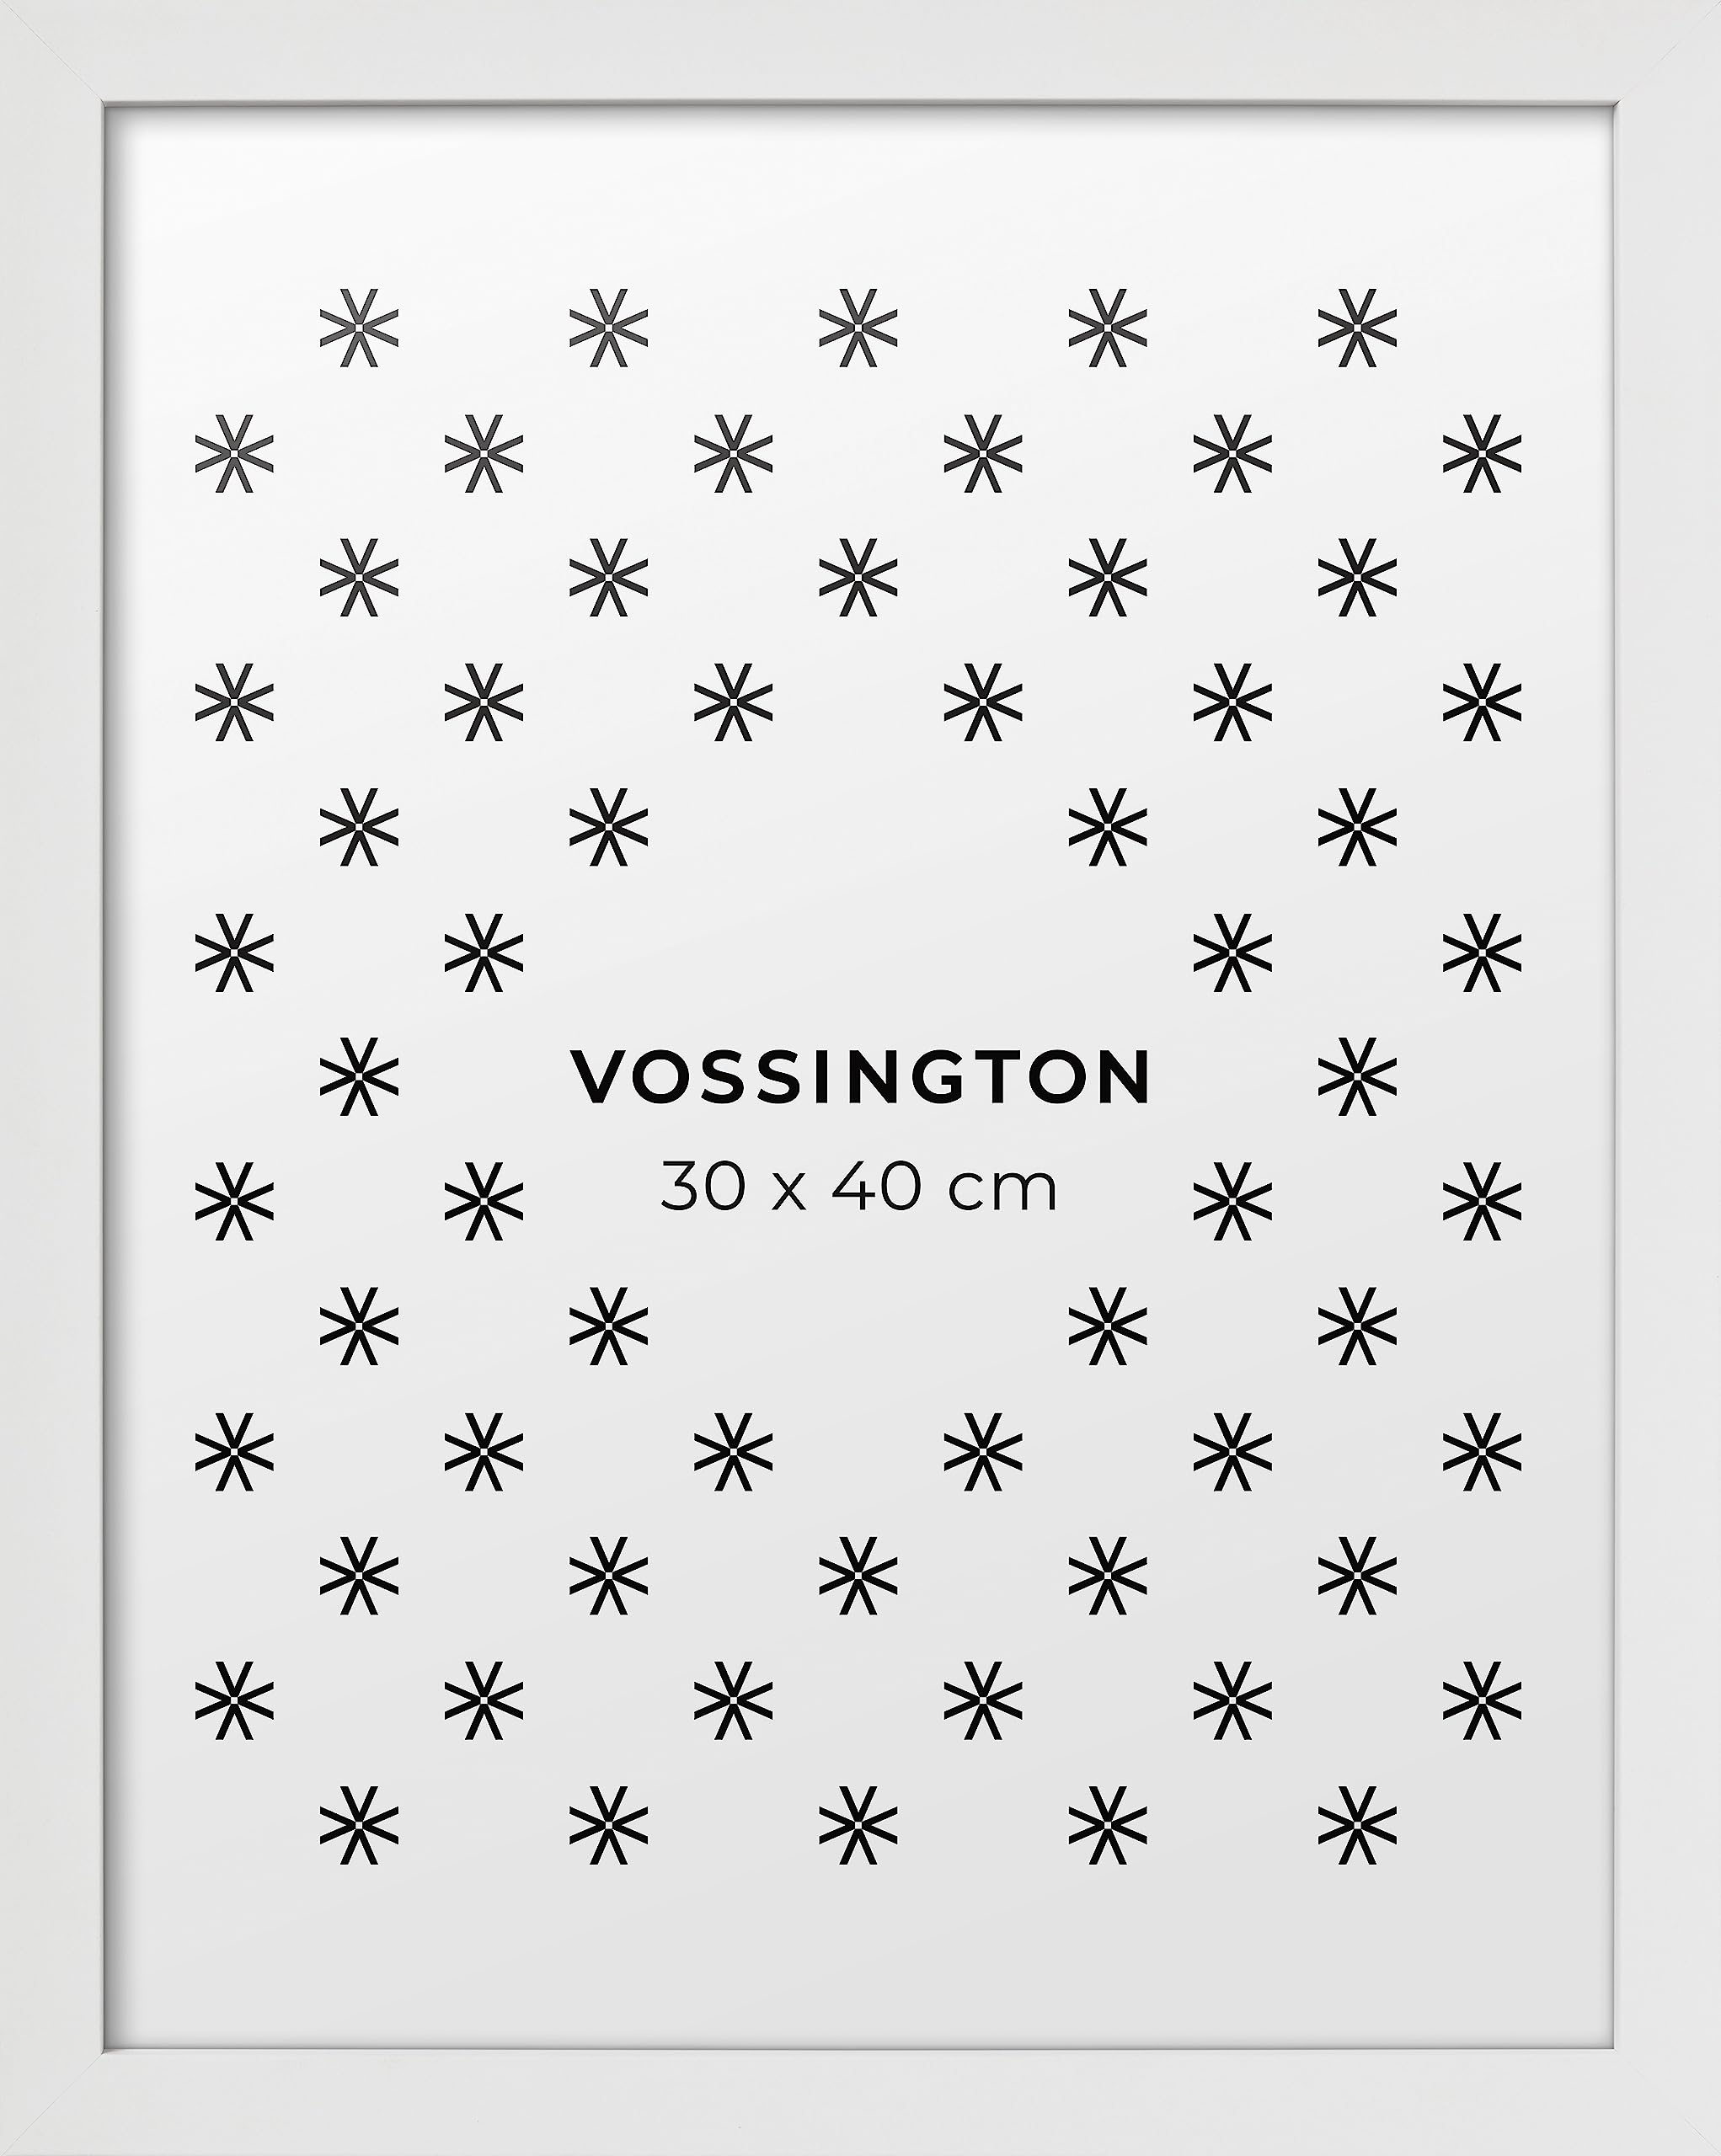 Vossington Bilderrahmen 30x40 Weiss - Modernes, klassisches Design - Rahmen für 1 Bild, Foto, Poster oder Puzzle im Format 30 x 40 cm (40x30 cm)